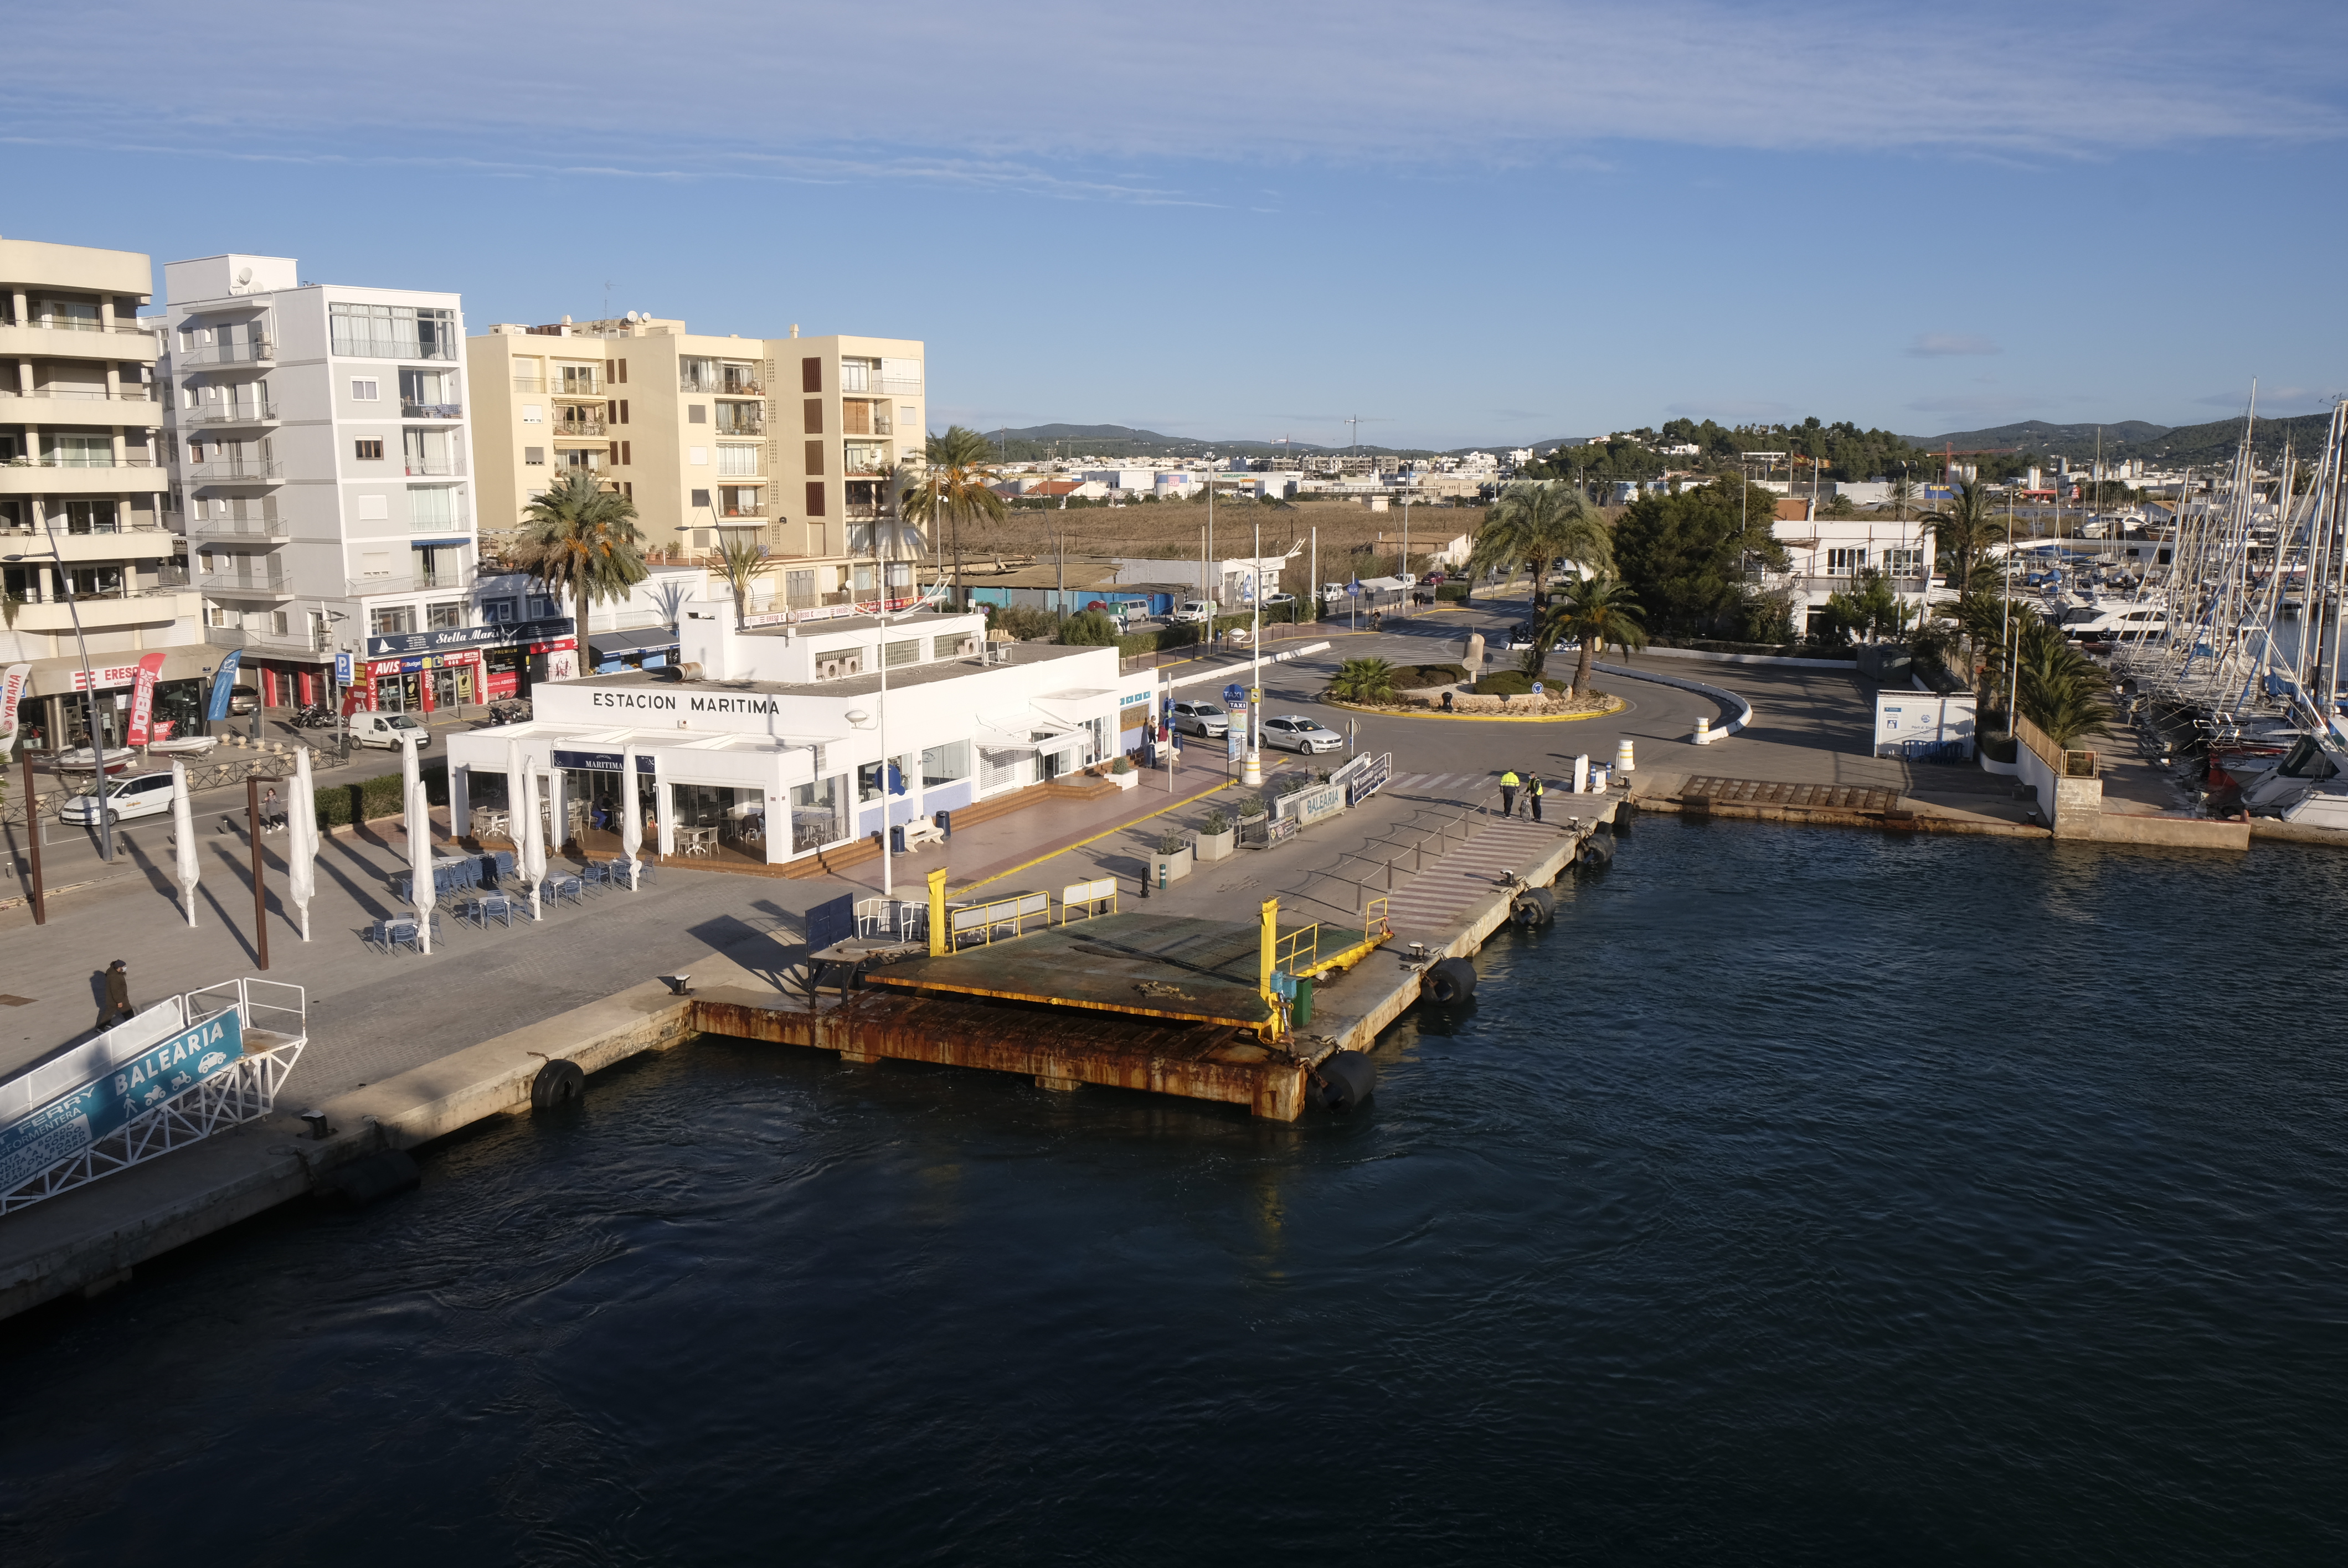 Elegida como solución más ventajosa la propuesta presentada por la empresa Calima la Savina S.L. para la gestión de la cafetería de la Estación Marítima de Formentera en el puerto de Eivissa